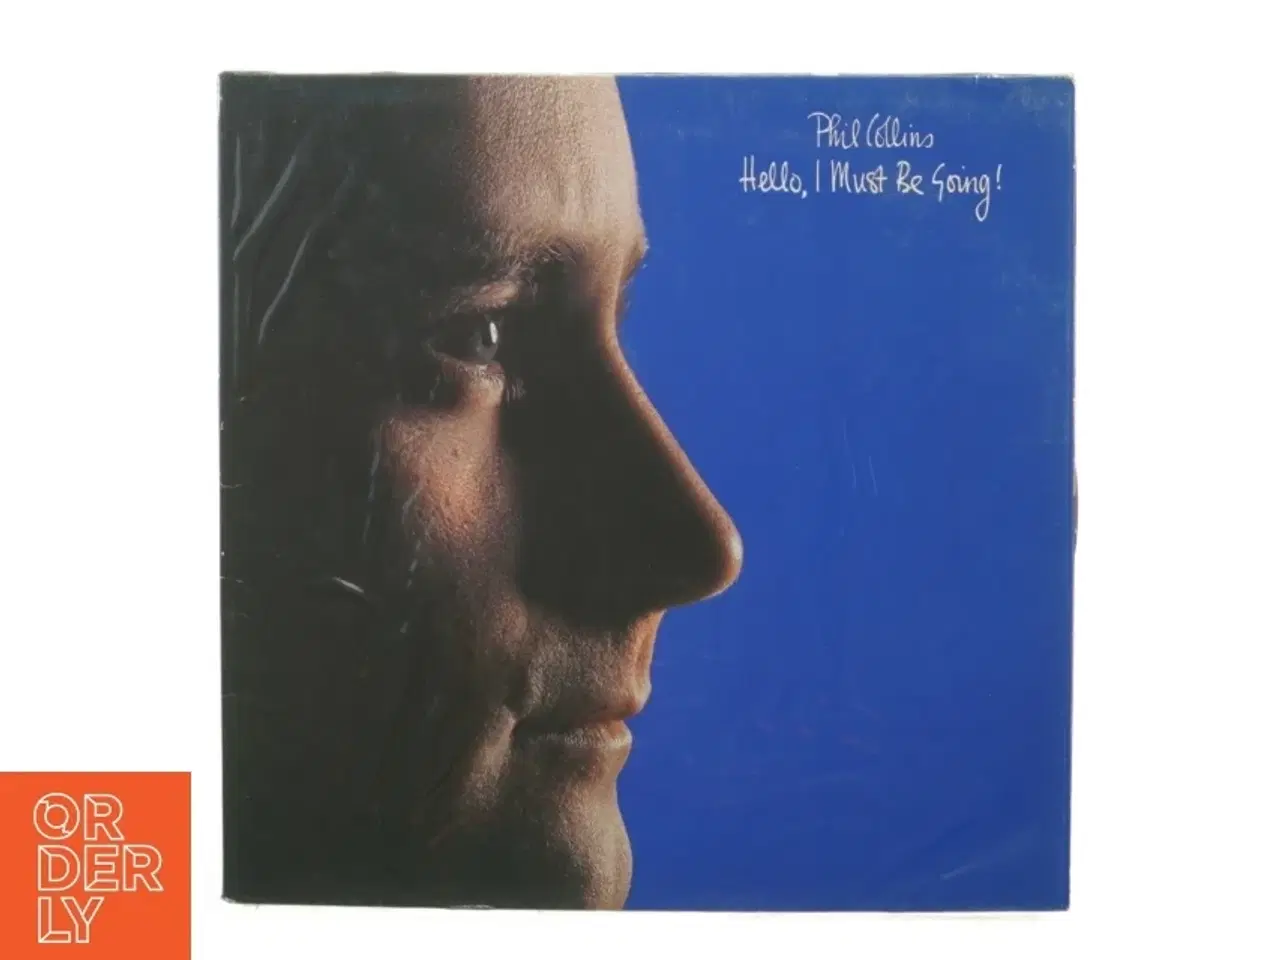 Billede 1 - Phil Collins: Hello i must be going (LP) fra Wea (str. 30 cm)